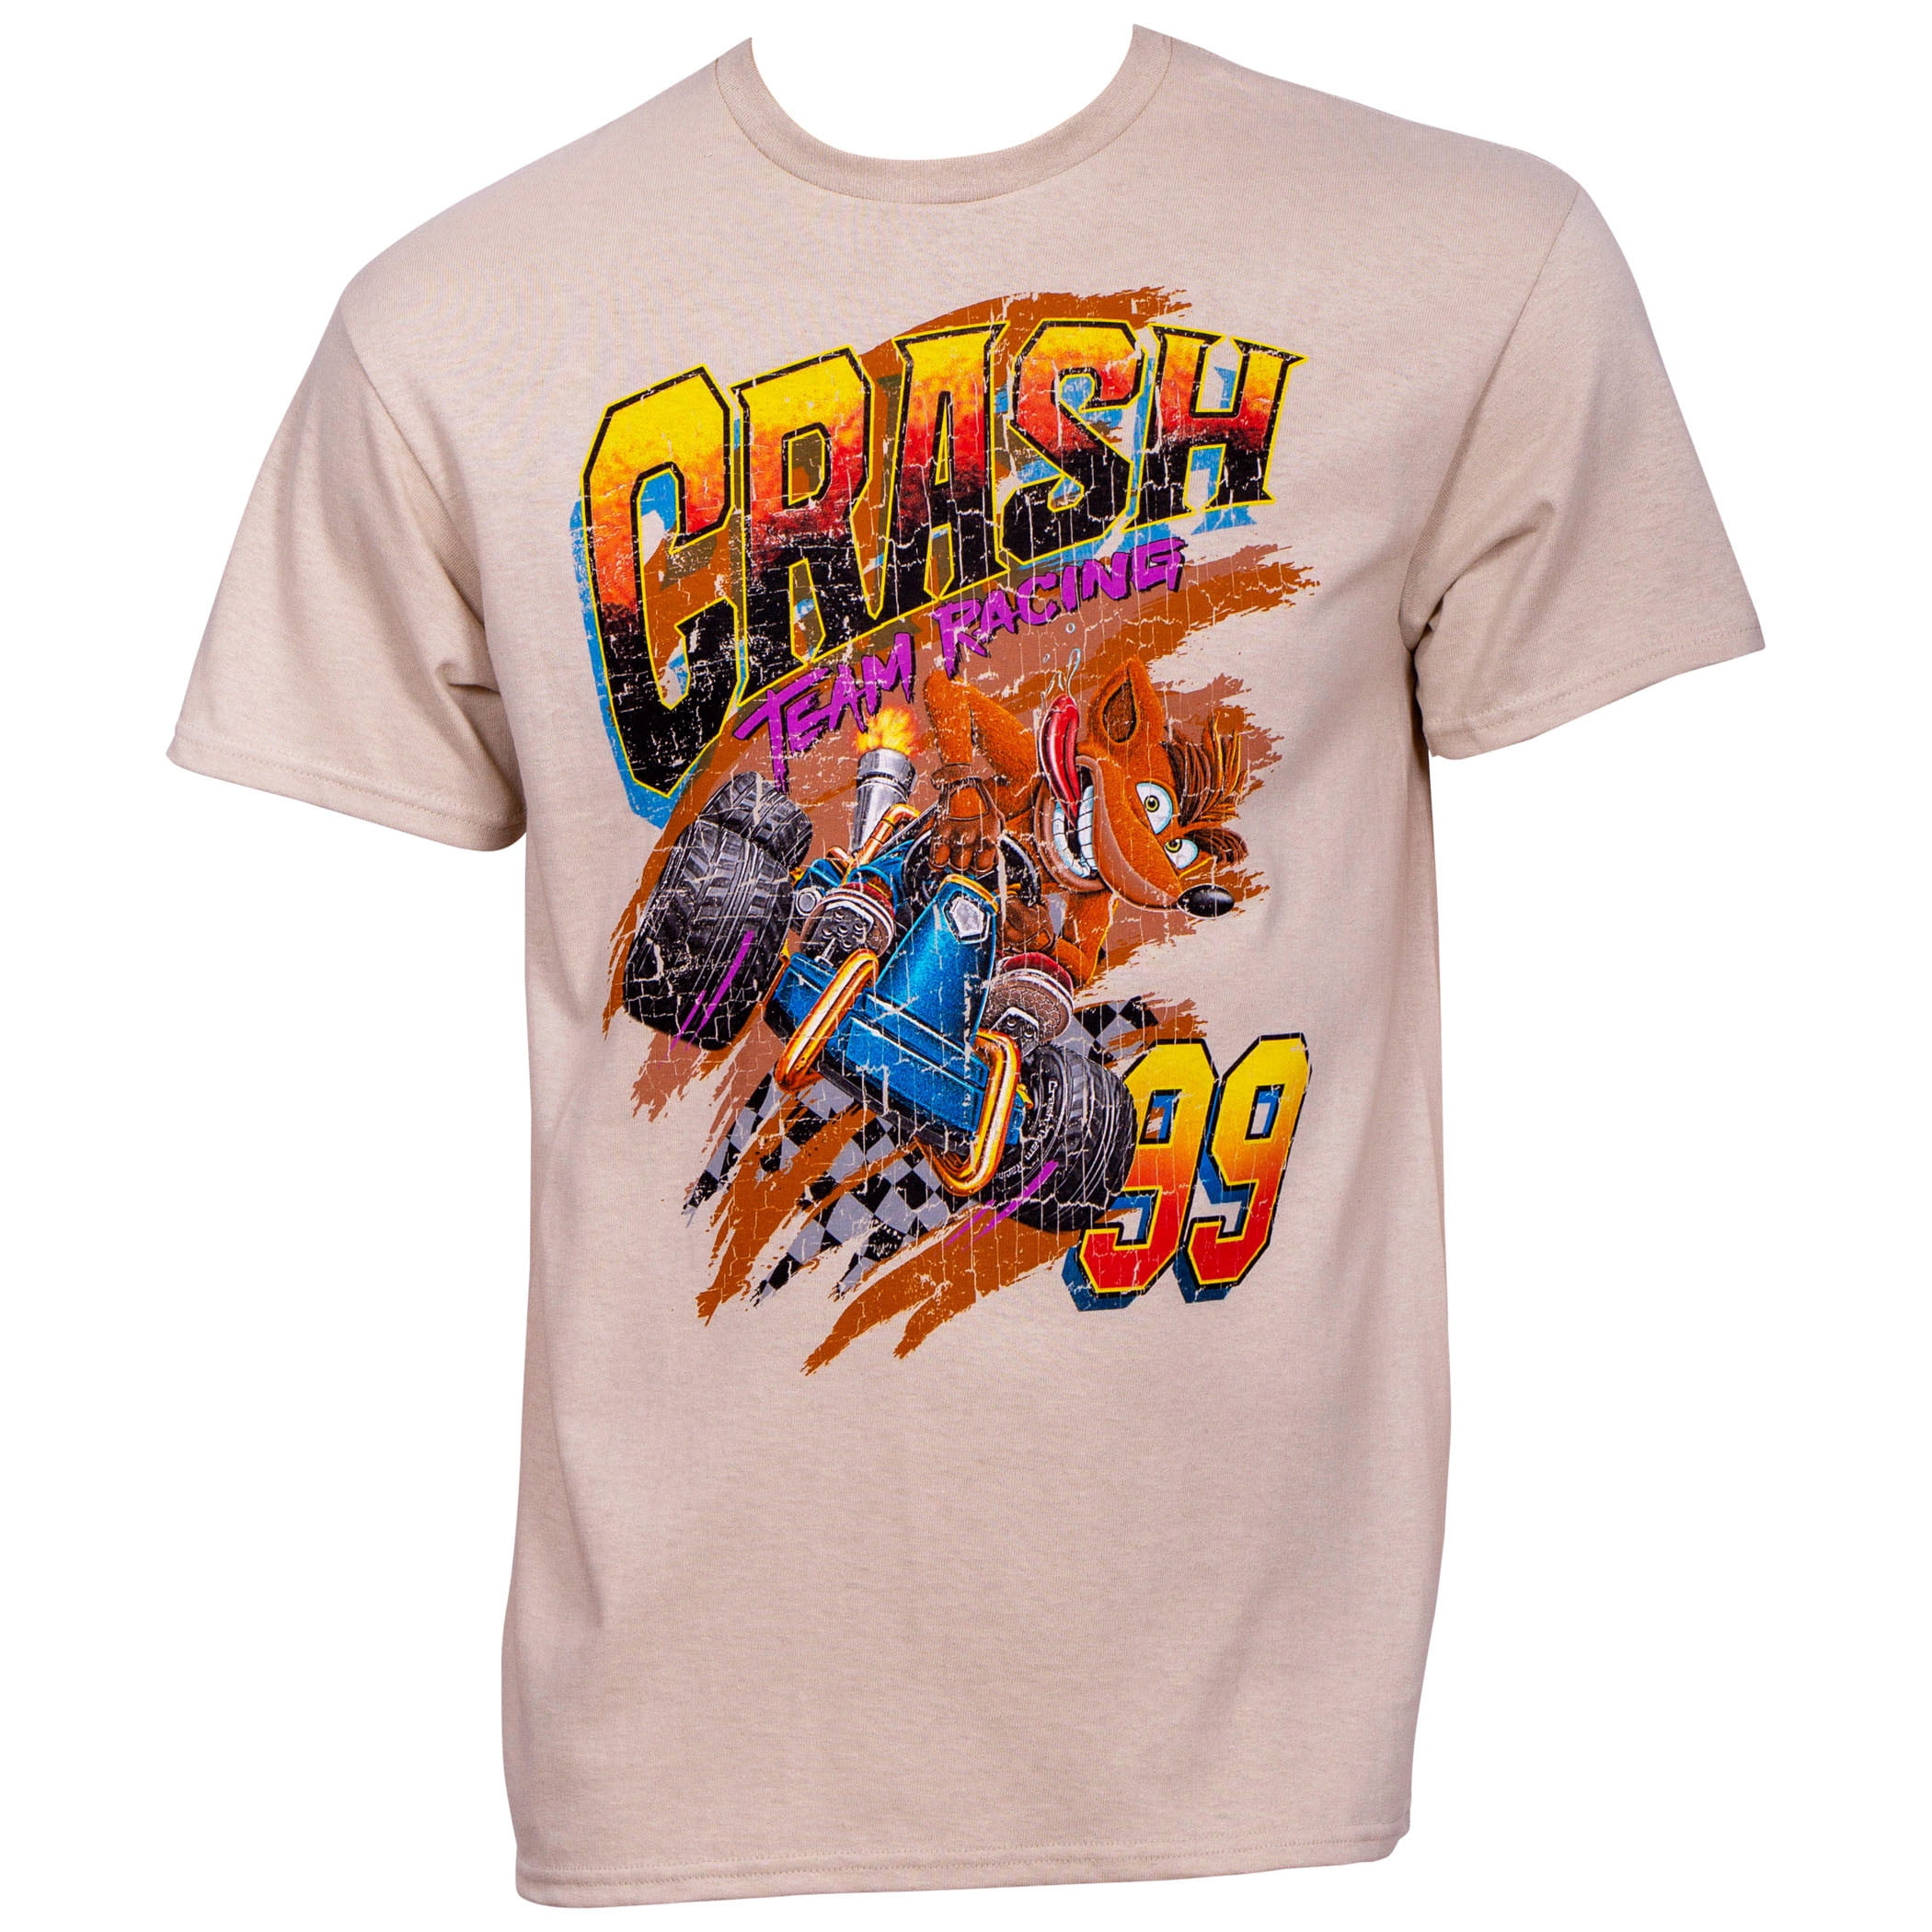 Best Quality Costum Tshirt Fashion T Shirts Summer Straight Crash Bandicoot 